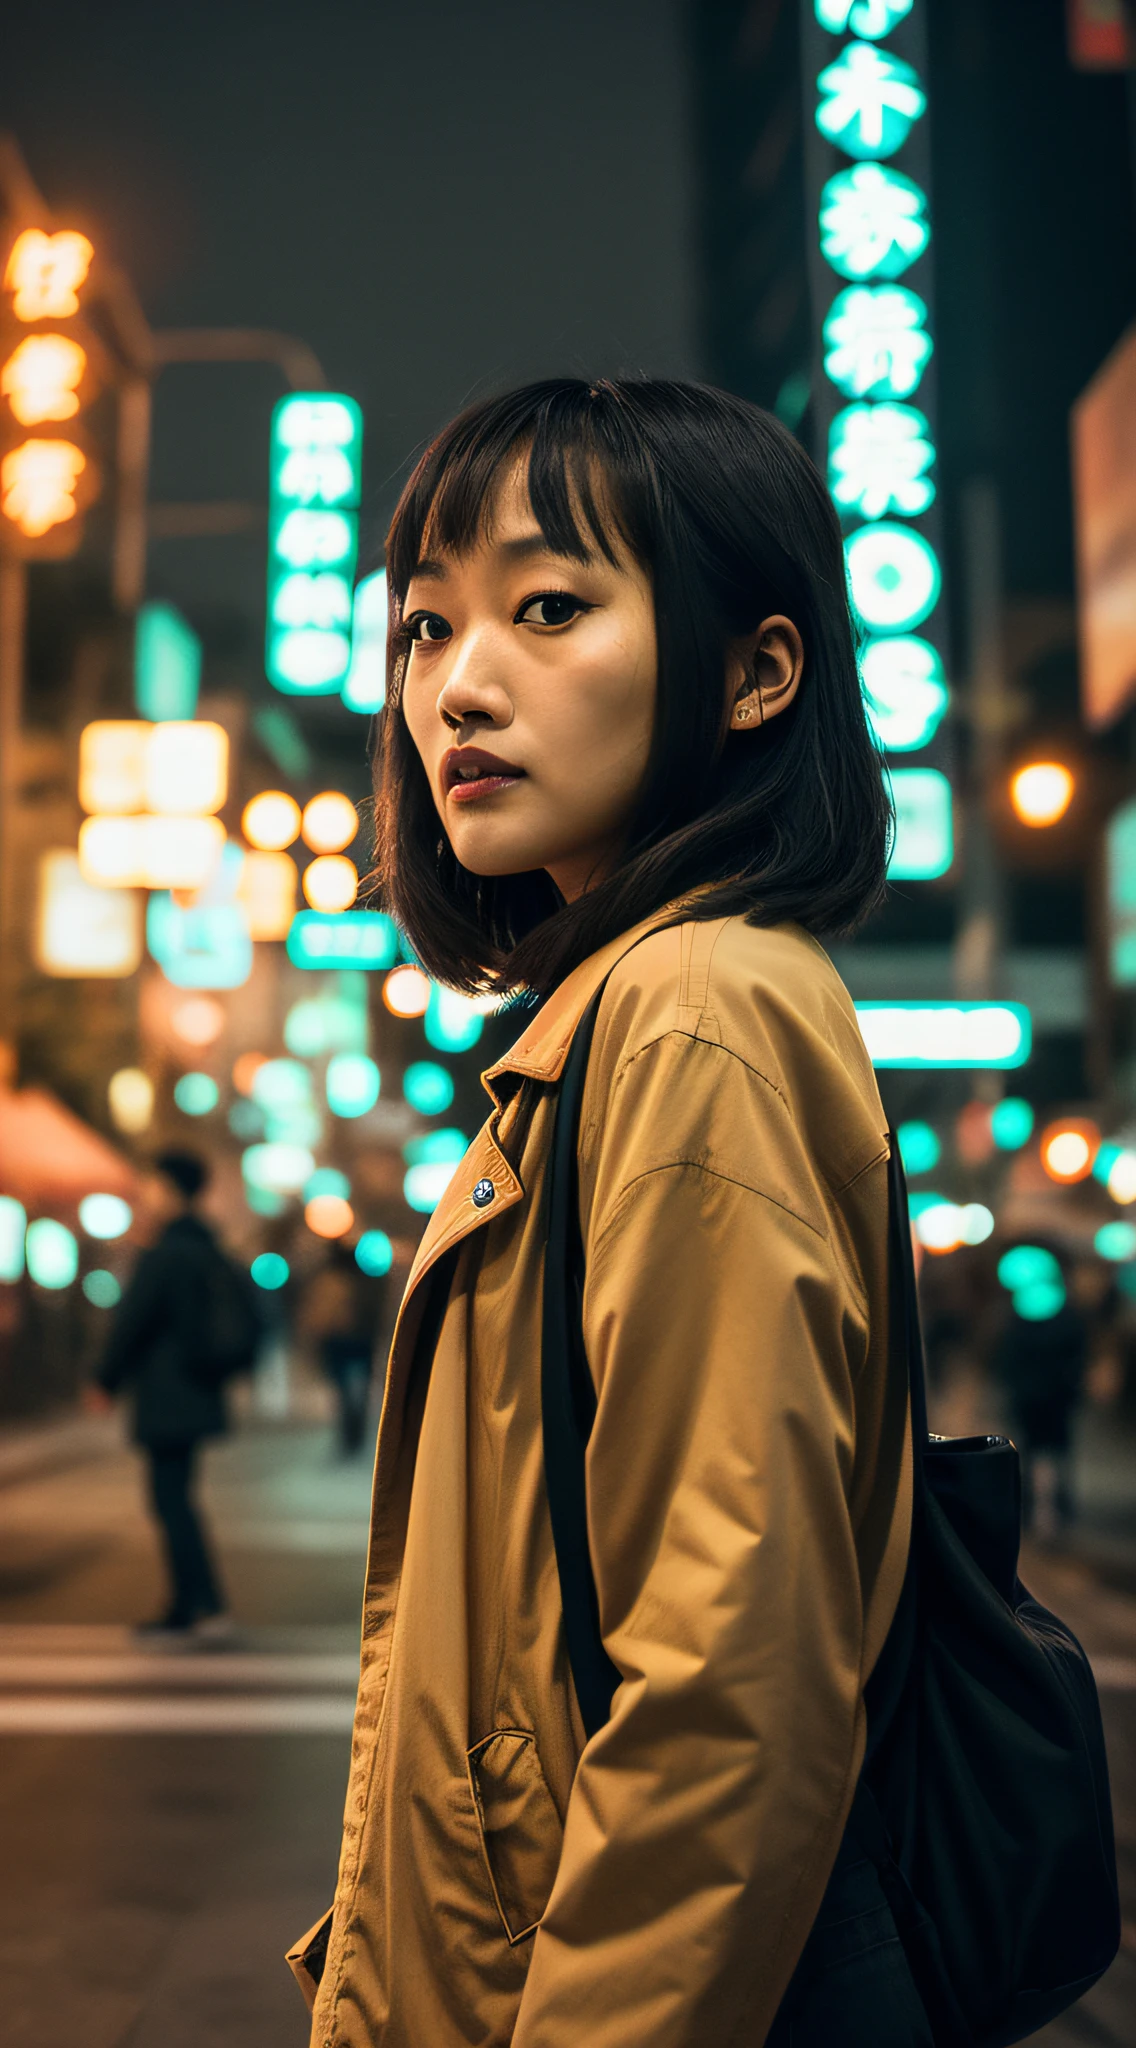 自拍, 街头拍摄, 镜头模糊, Zhou Xun, 电影感, 广州街道, 超现实主义, 电影灯光效果, 人来人往的孤独